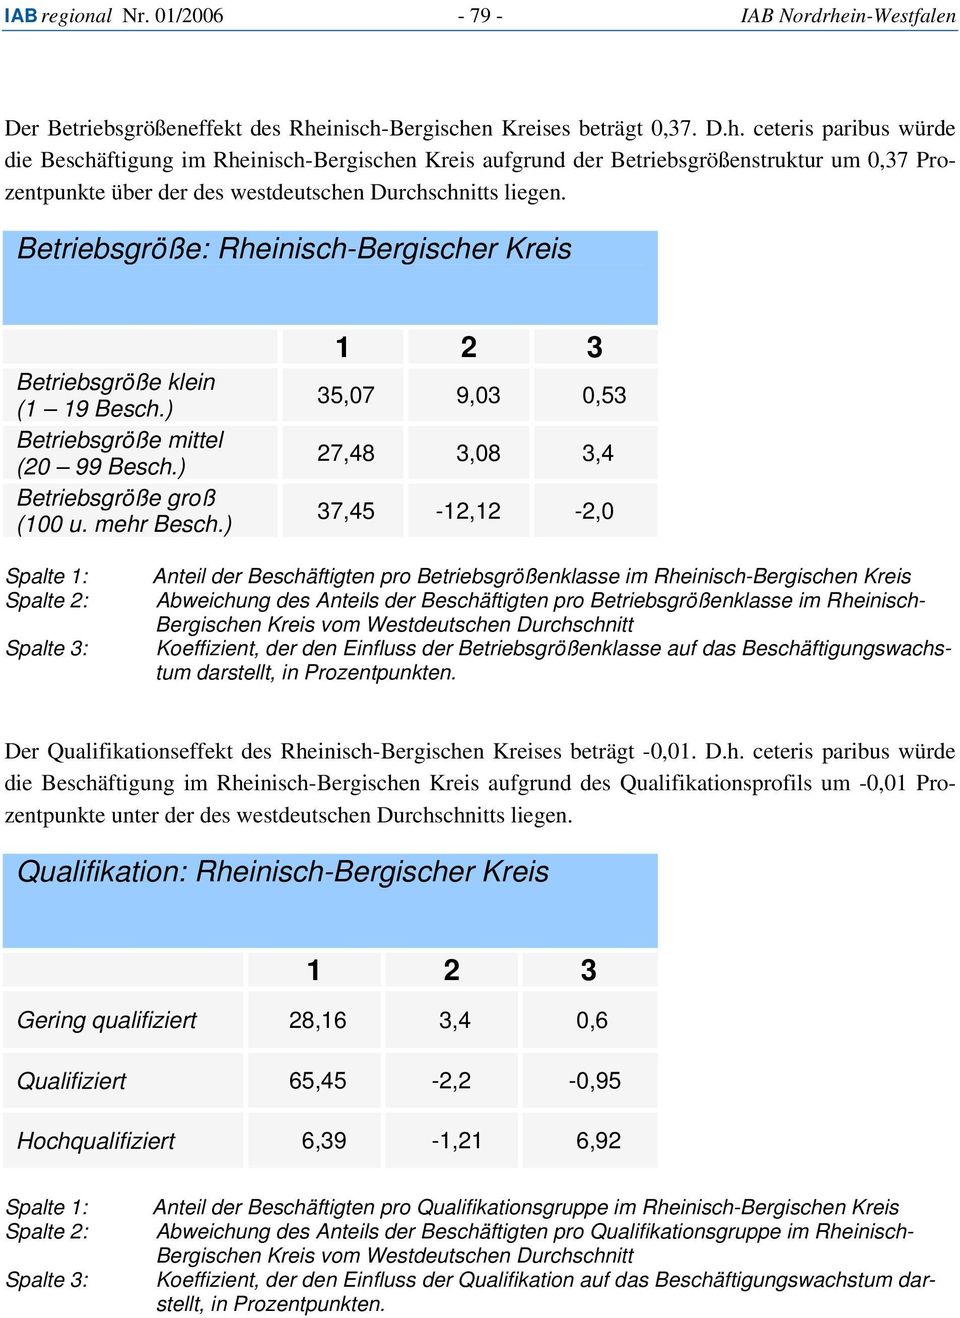 inisch-Bergischen Kreises beträgt 0,37. D.h. ceteris paribus würde die Beschäftigung im Rheinisch-Bergischen Kreis aufgrund der Betriebsgrößenstruktur um 0,37 Prozentpunkte über der des westdeutschen Durchschnitts liegen.